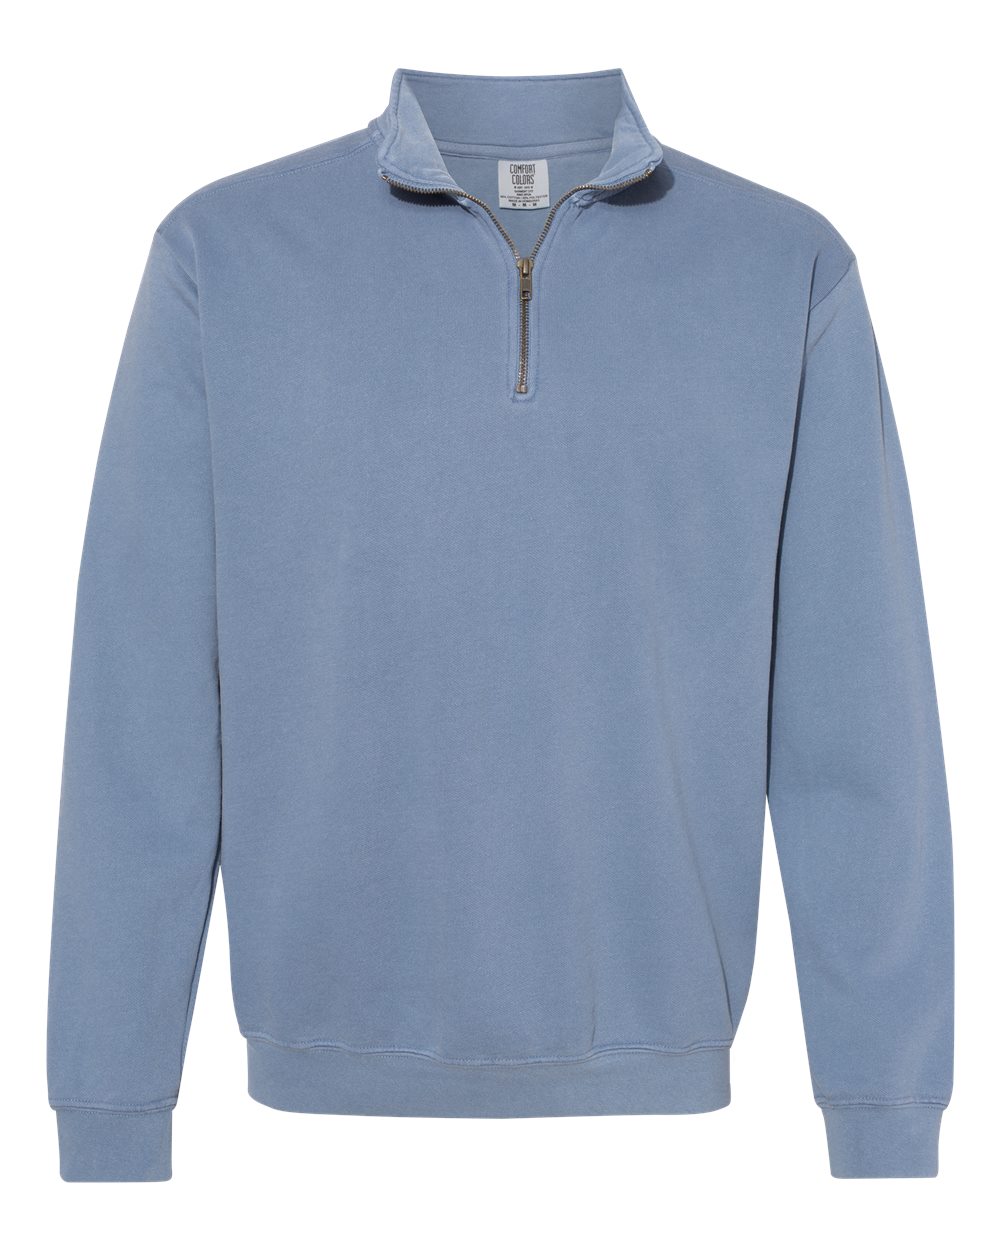 Garment-Dyed Quarter Zip Sweatshirt - Comfort Colors 1580